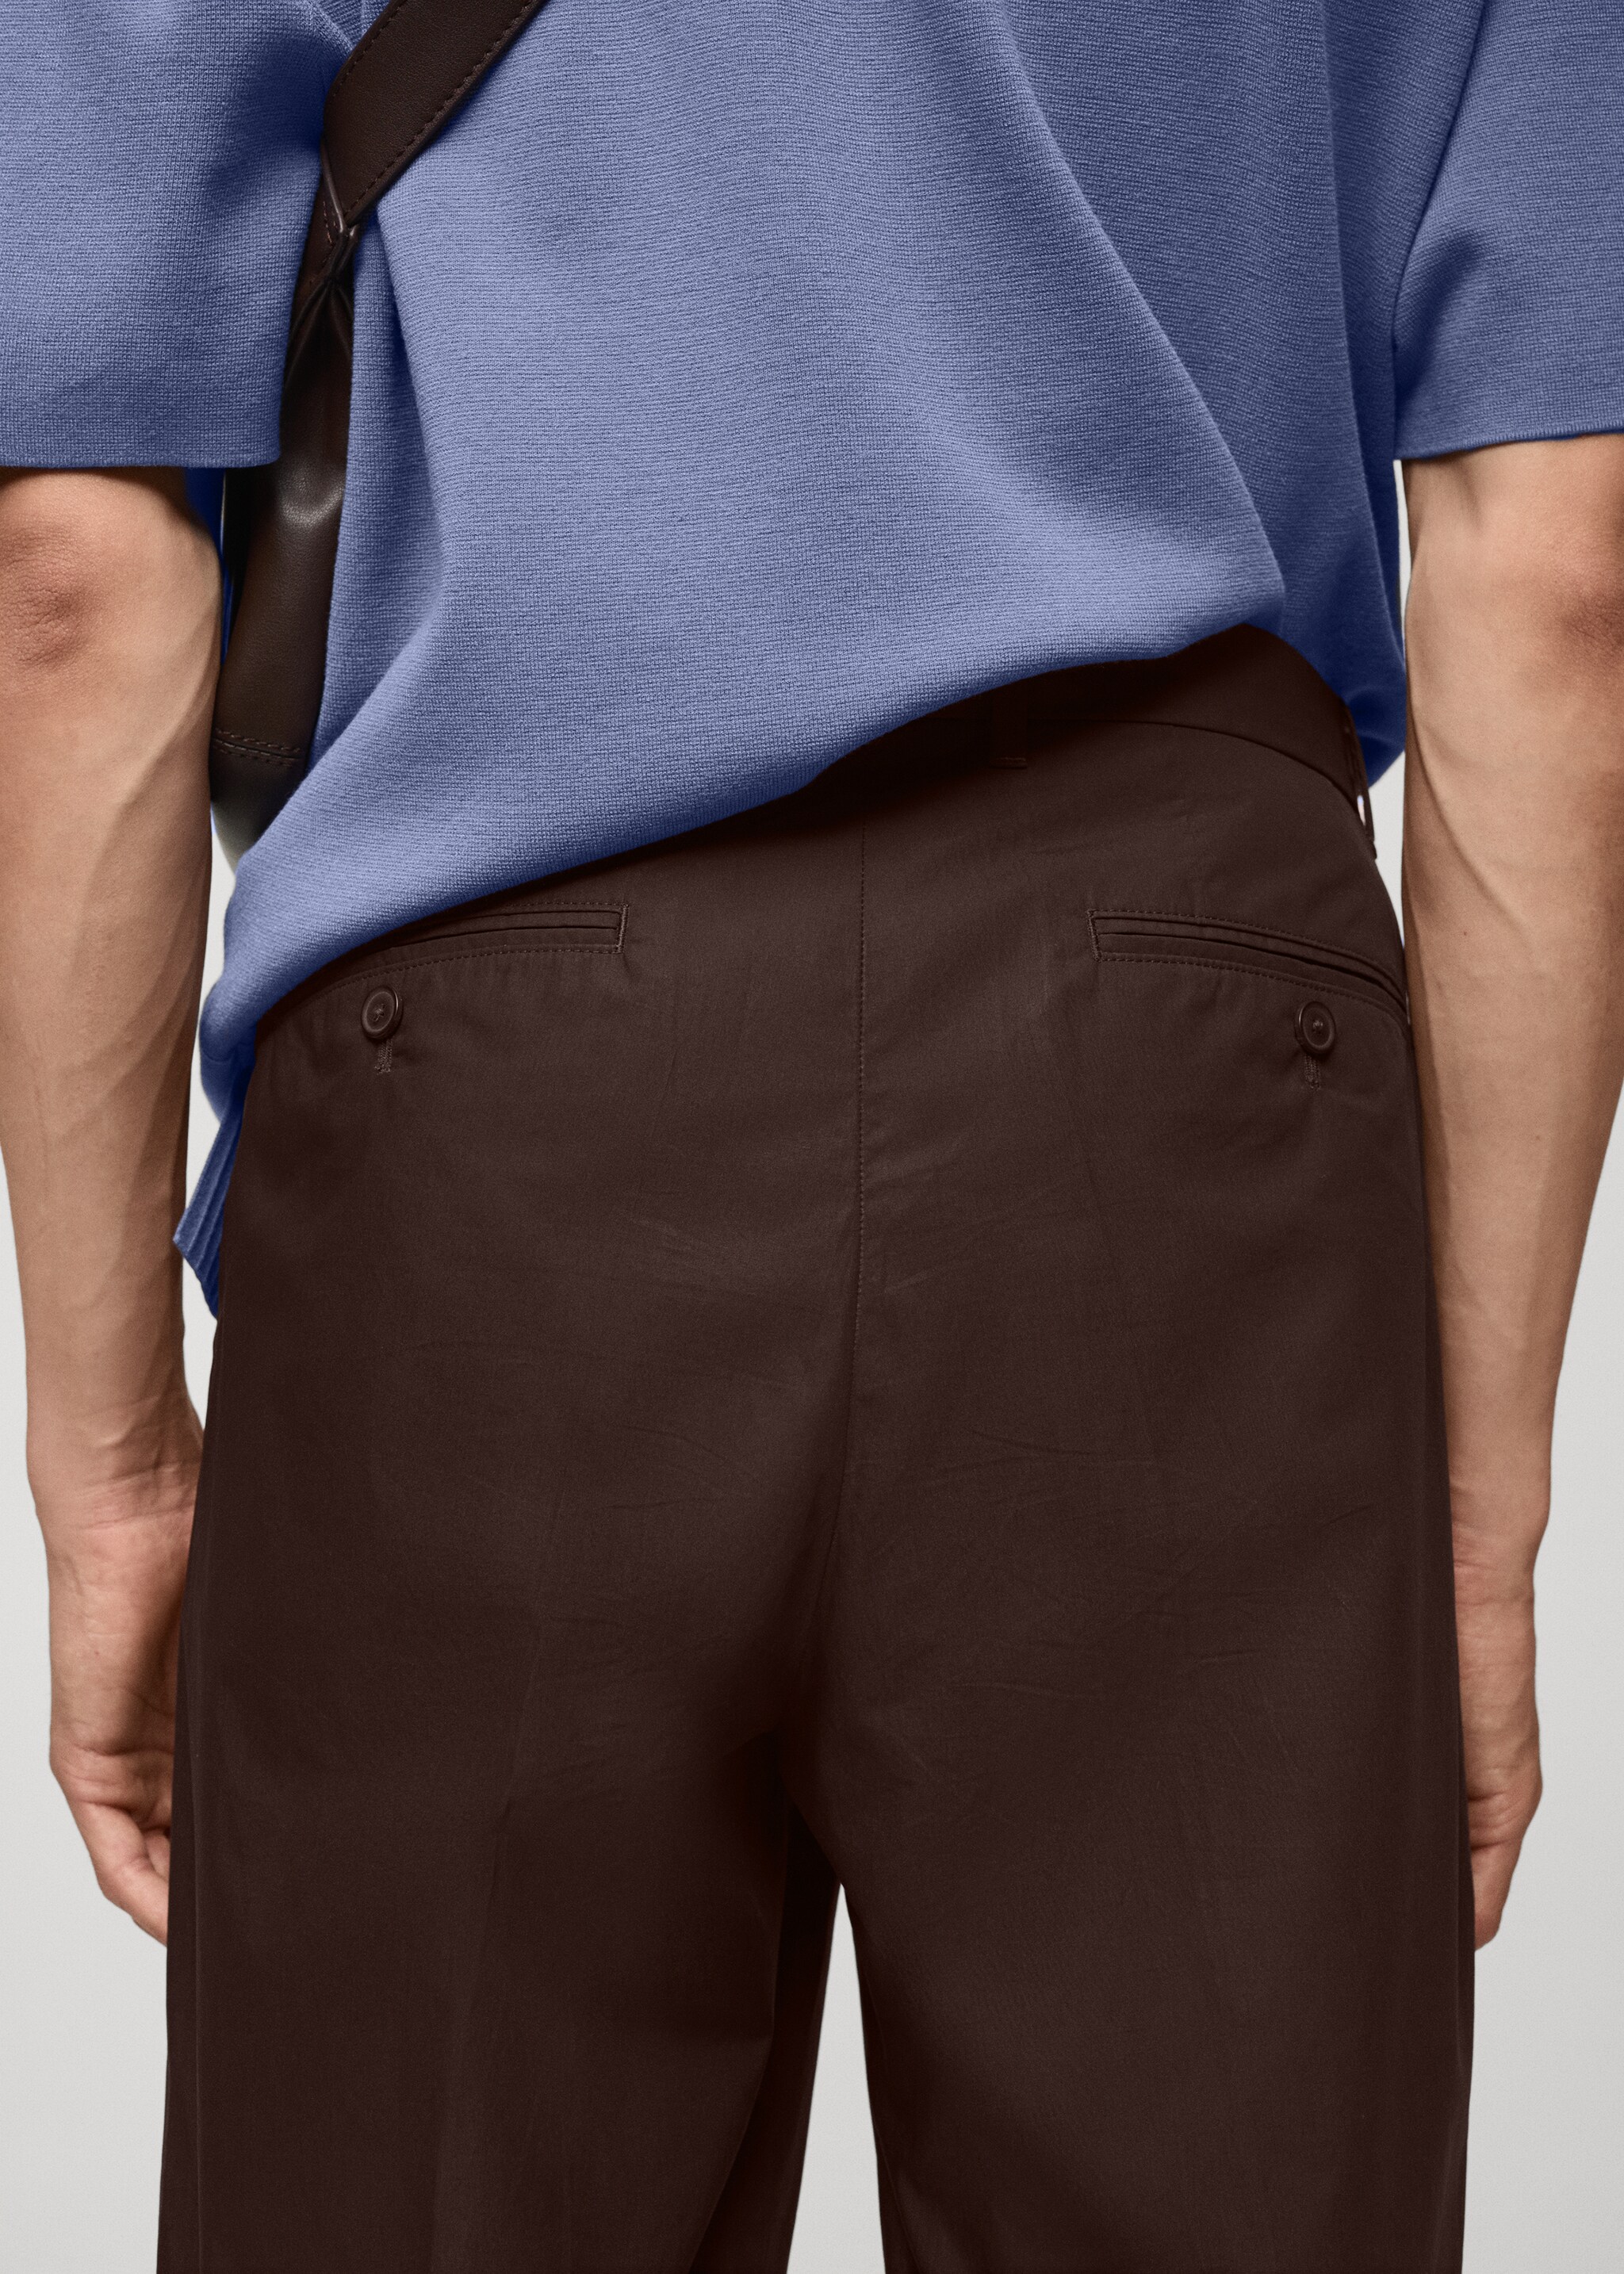 Pantalón regular fit 100% algodón - Detalle del artículo 6